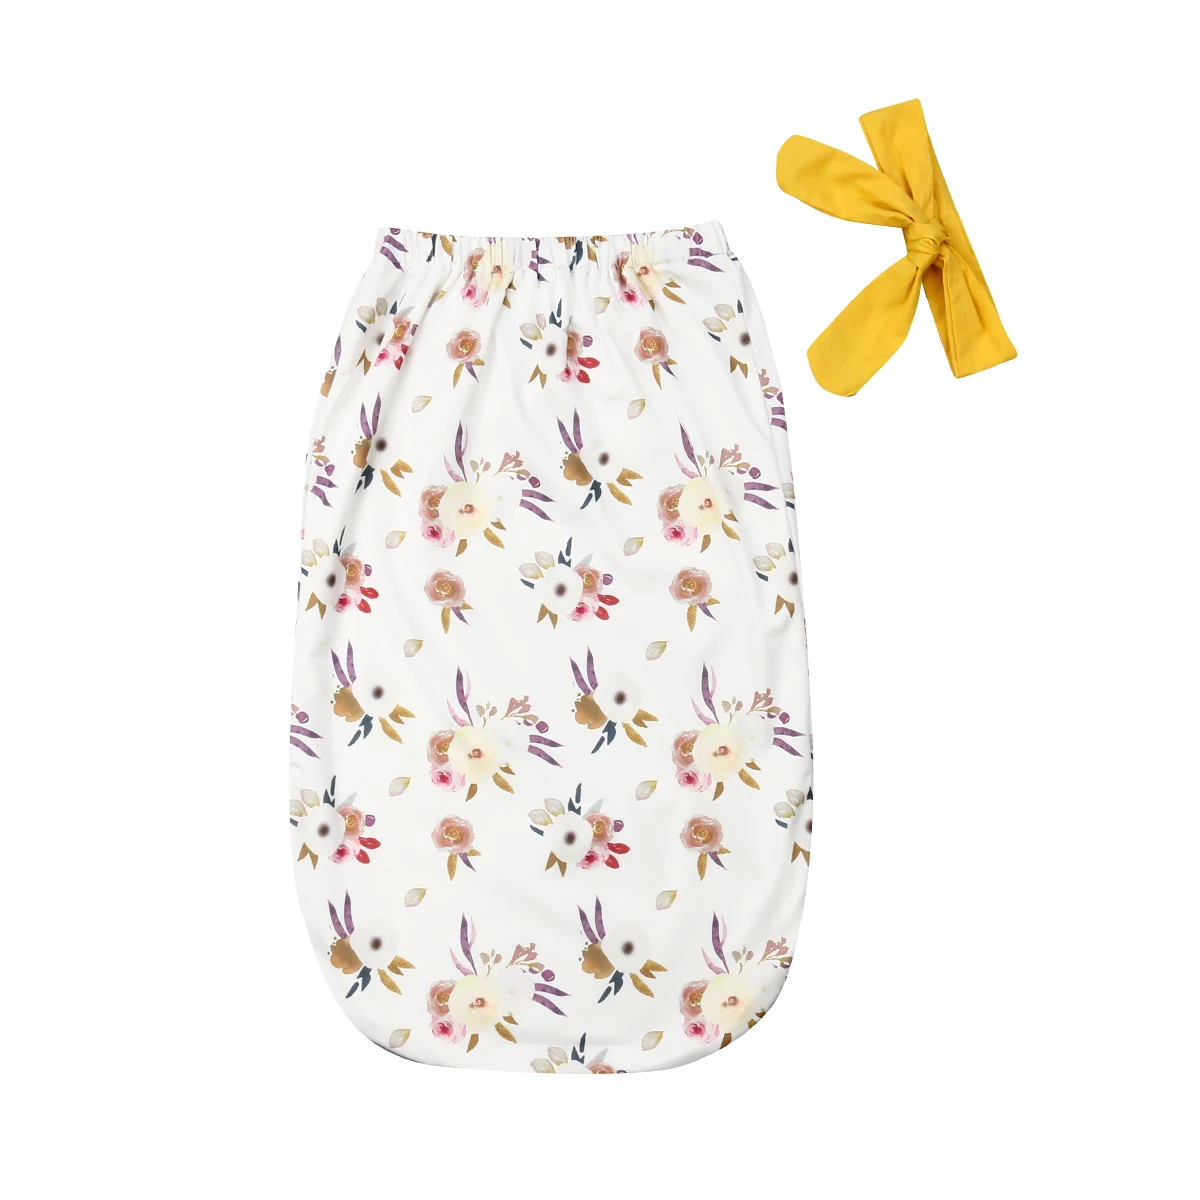 Одежда для новорожденных Одежда для детей и малышей с цветочным узором для мальчиков и девочек, зимний халат с цветочным мягкая пеленка Одеяло+ Прекрасный оголовье, набор